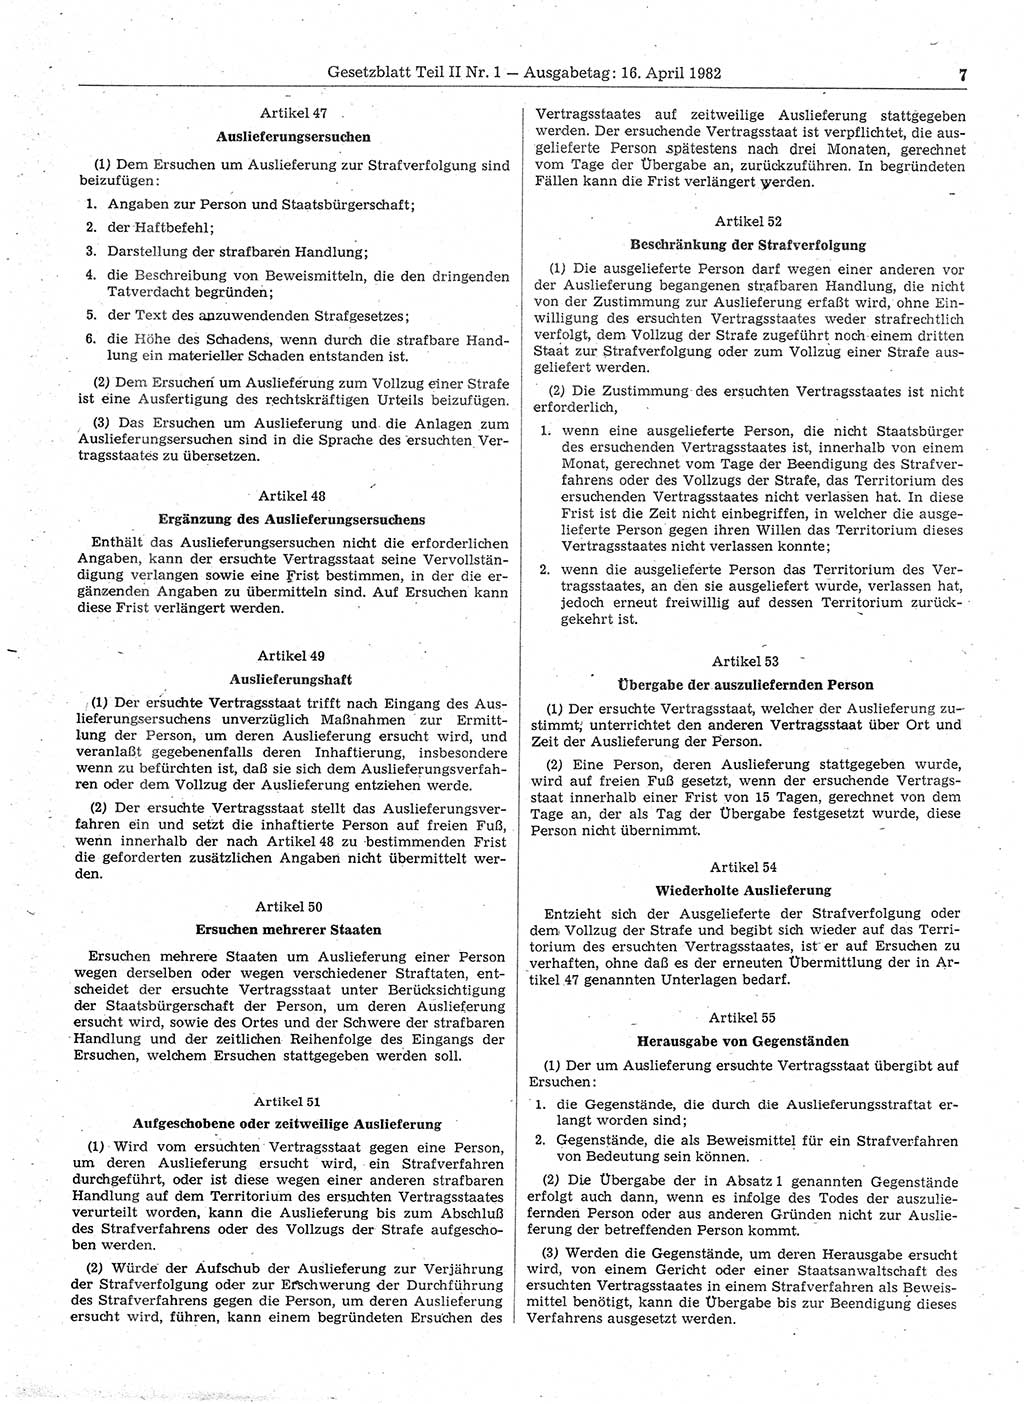 Gesetzblatt (GBl.) der Deutschen Demokratischen Republik (DDR) Teil ⅠⅠ 1982, Seite 7 (GBl. DDR ⅠⅠ 1982, S. 7)